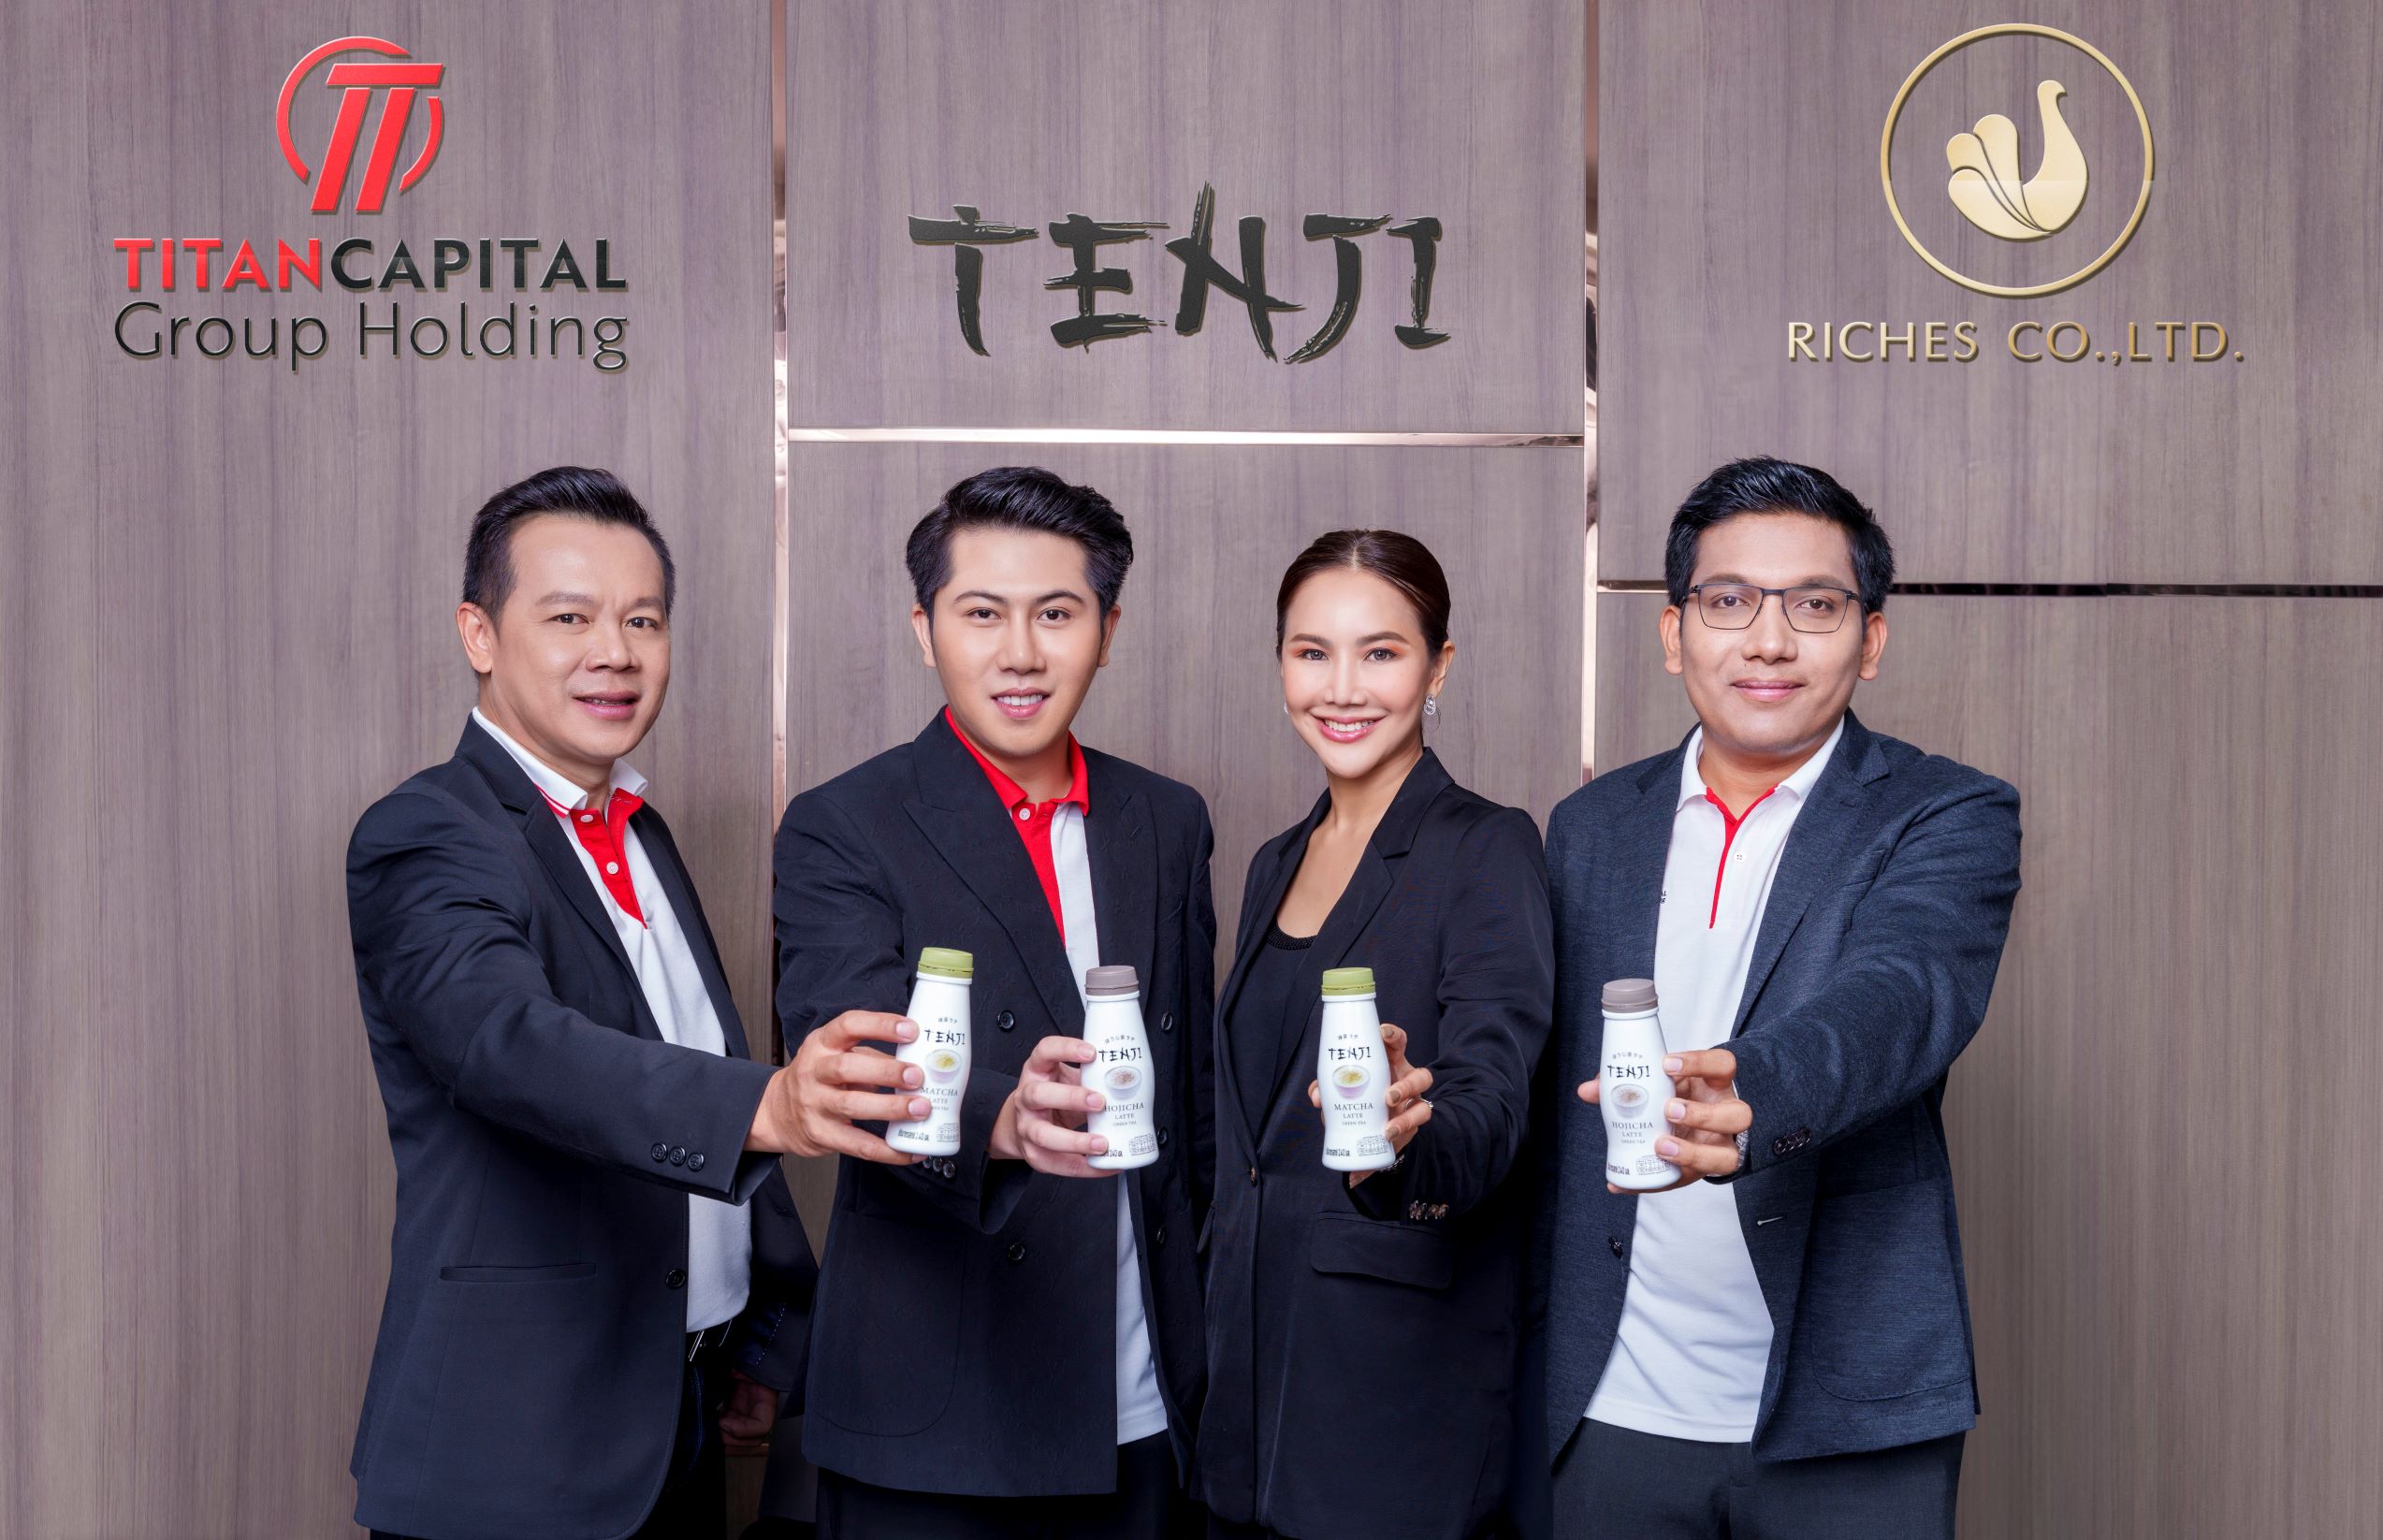 タイタンキャピタル」は、緑茶市場に参入するために「テンジ」軍を調整するために3000万を投資します